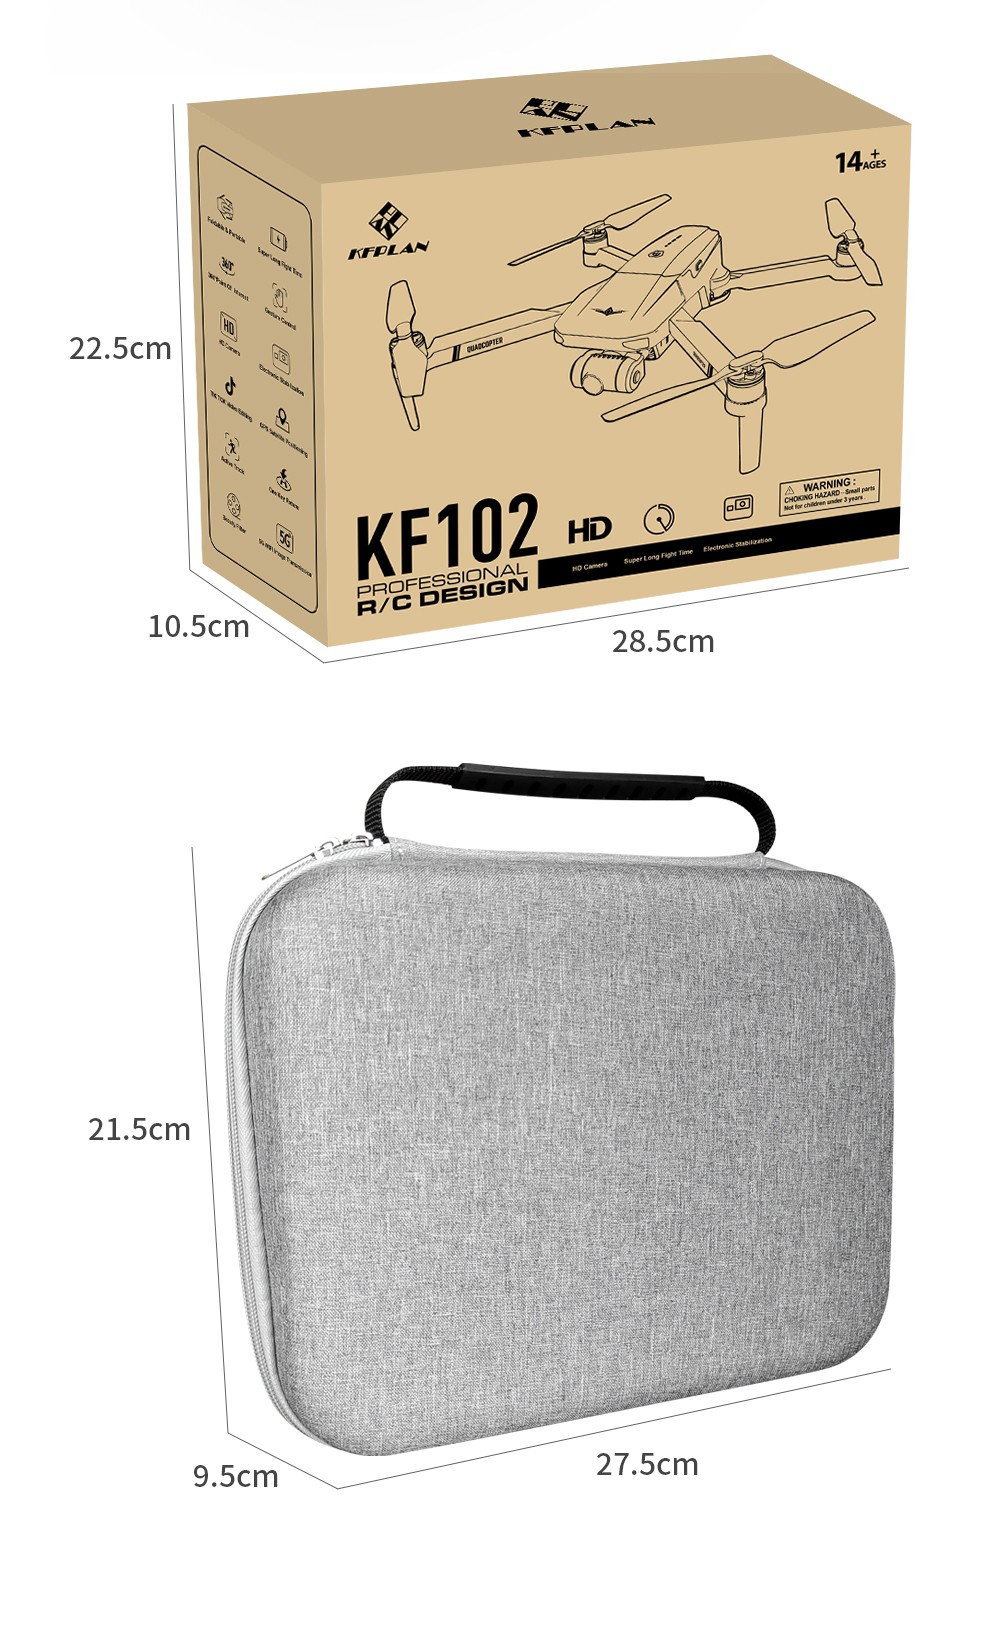 KF102 6K kamera GPS 5G WIFI FPV 2 tengelyes önstabilizáló mechanikus karmantyú kefe nélküli összehajtható RC drón - egy akkumulátor